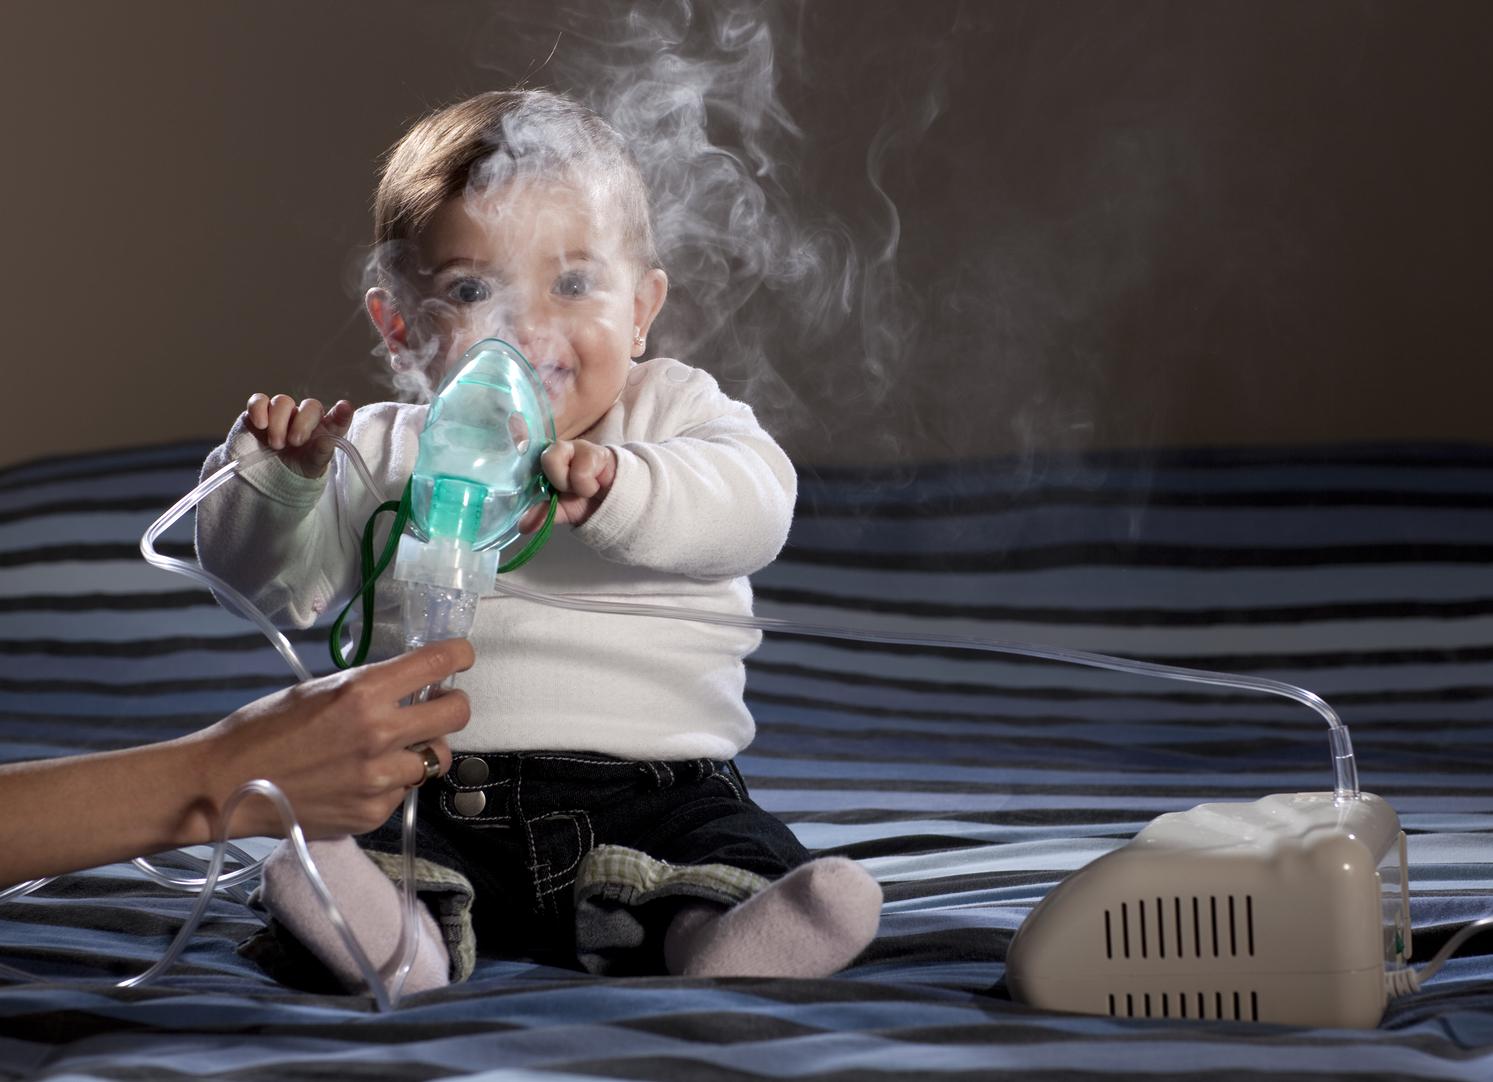 Comment réagir face à une crise d'asthme | lesprosdelapetiteenfance